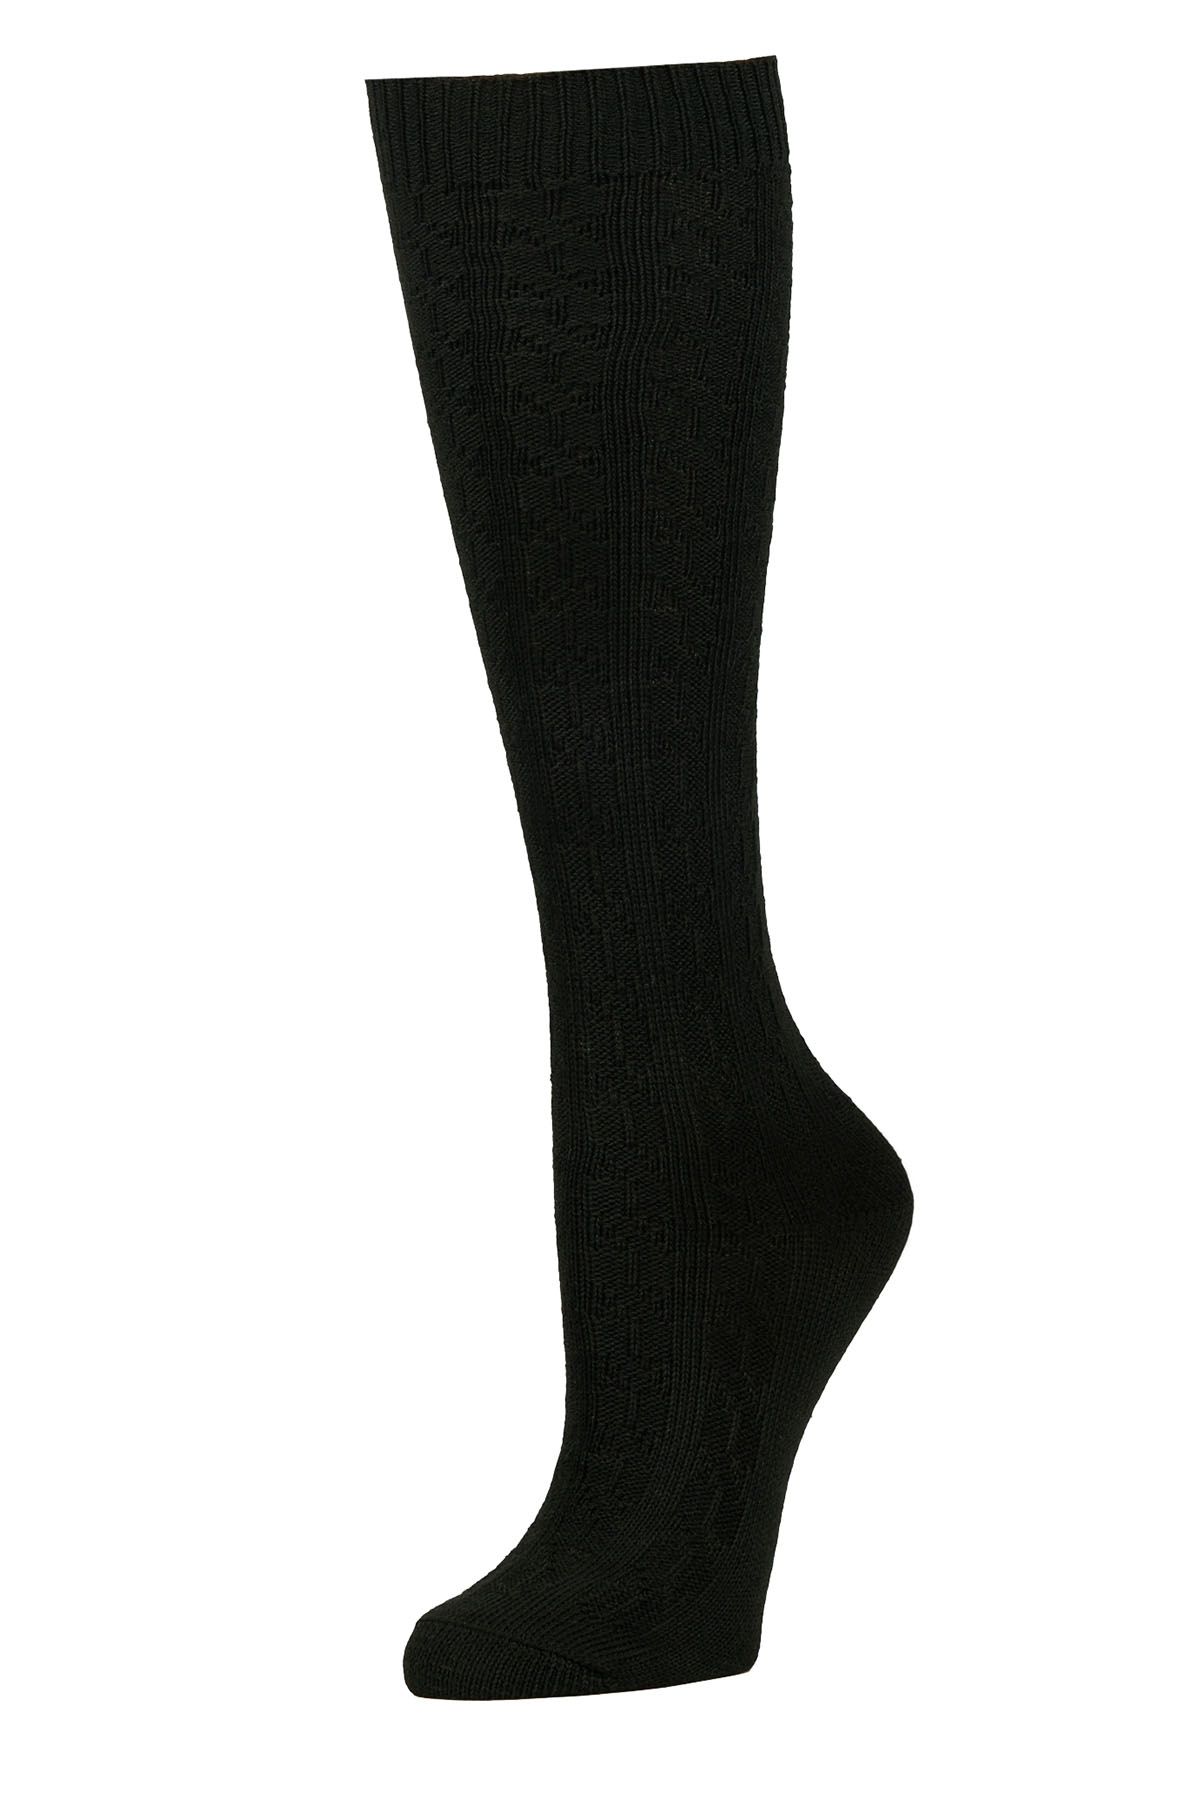 Sofra Black Knee High Socks